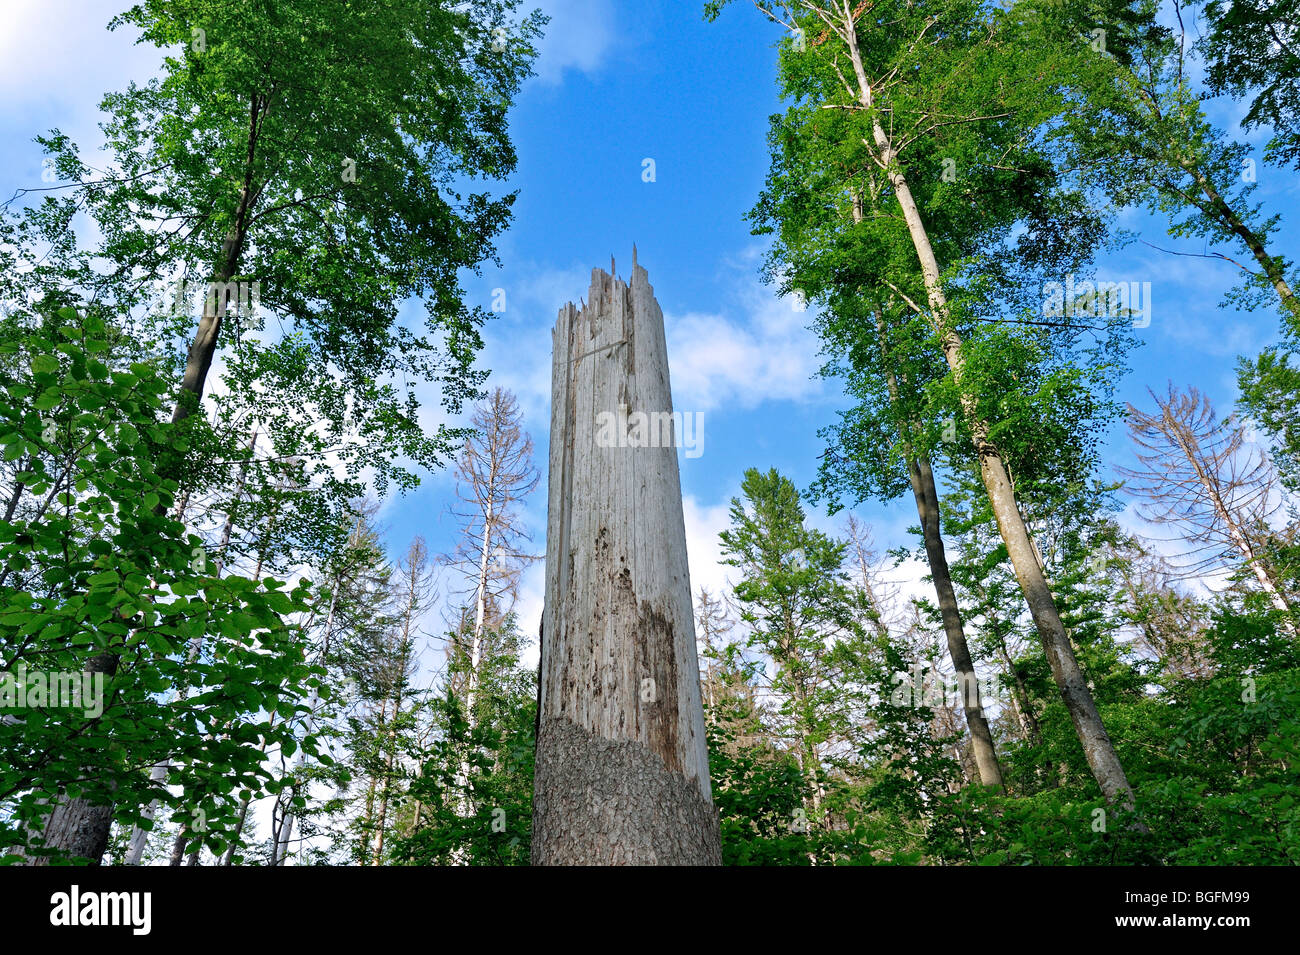 Rotture di tronchi di albero dei danni causati dalle tempeste nel bosco dopo il passaggio dell uragano, Foresta Bavarese, Germania Foto Stock